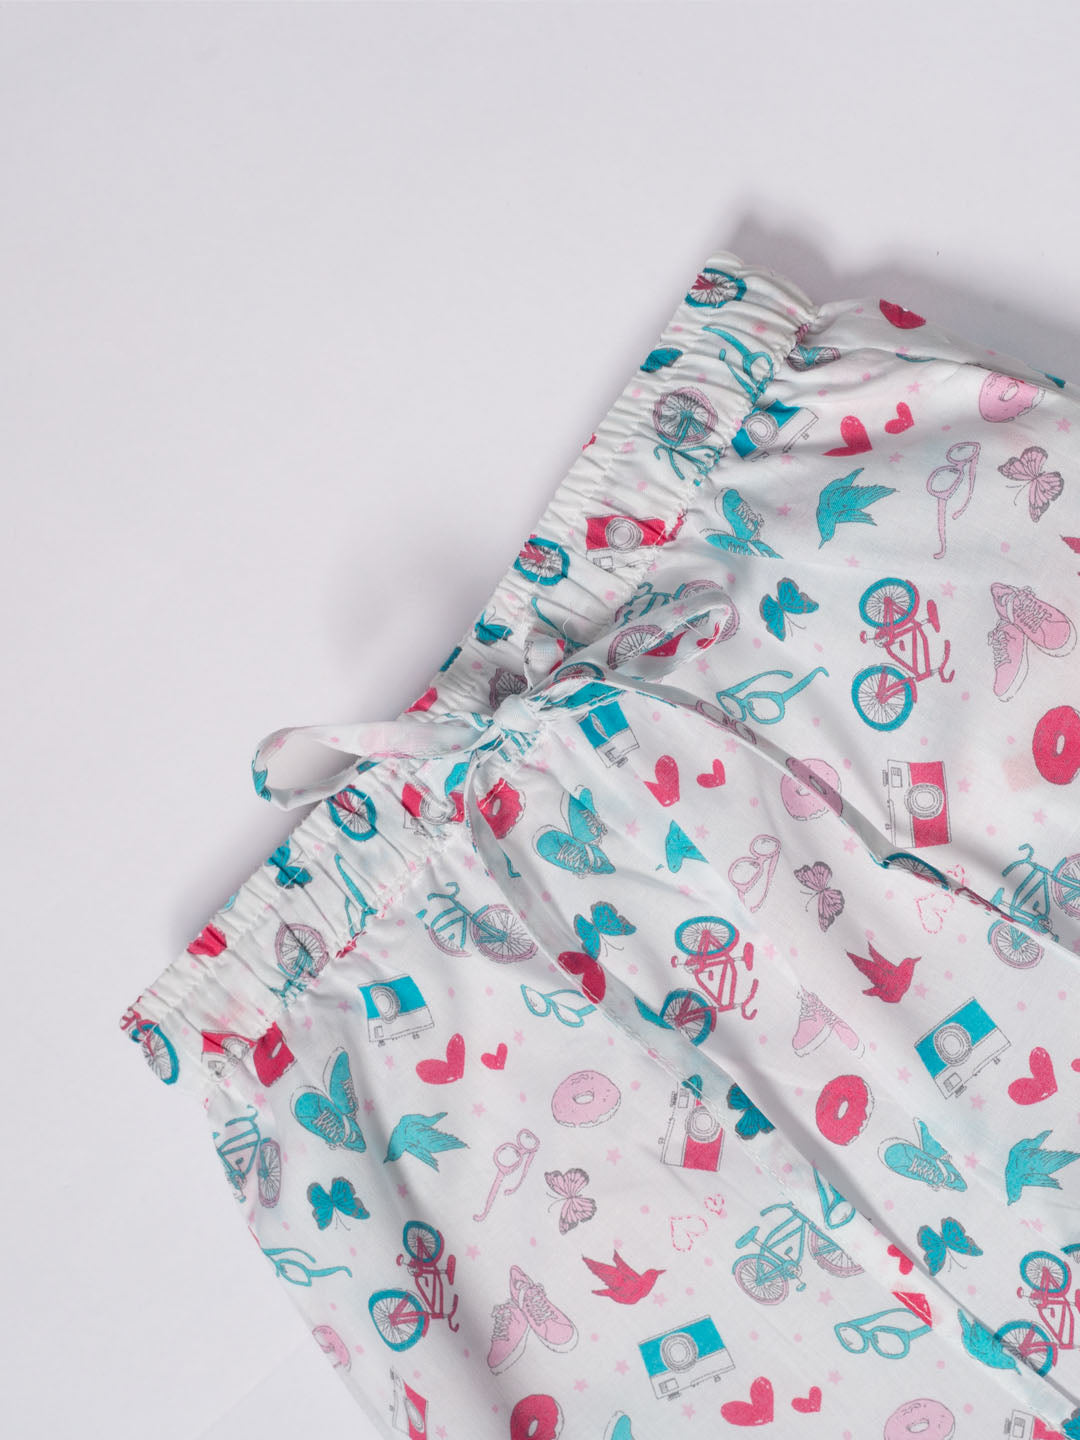 Little Tales Pyjama Set (Unisex)